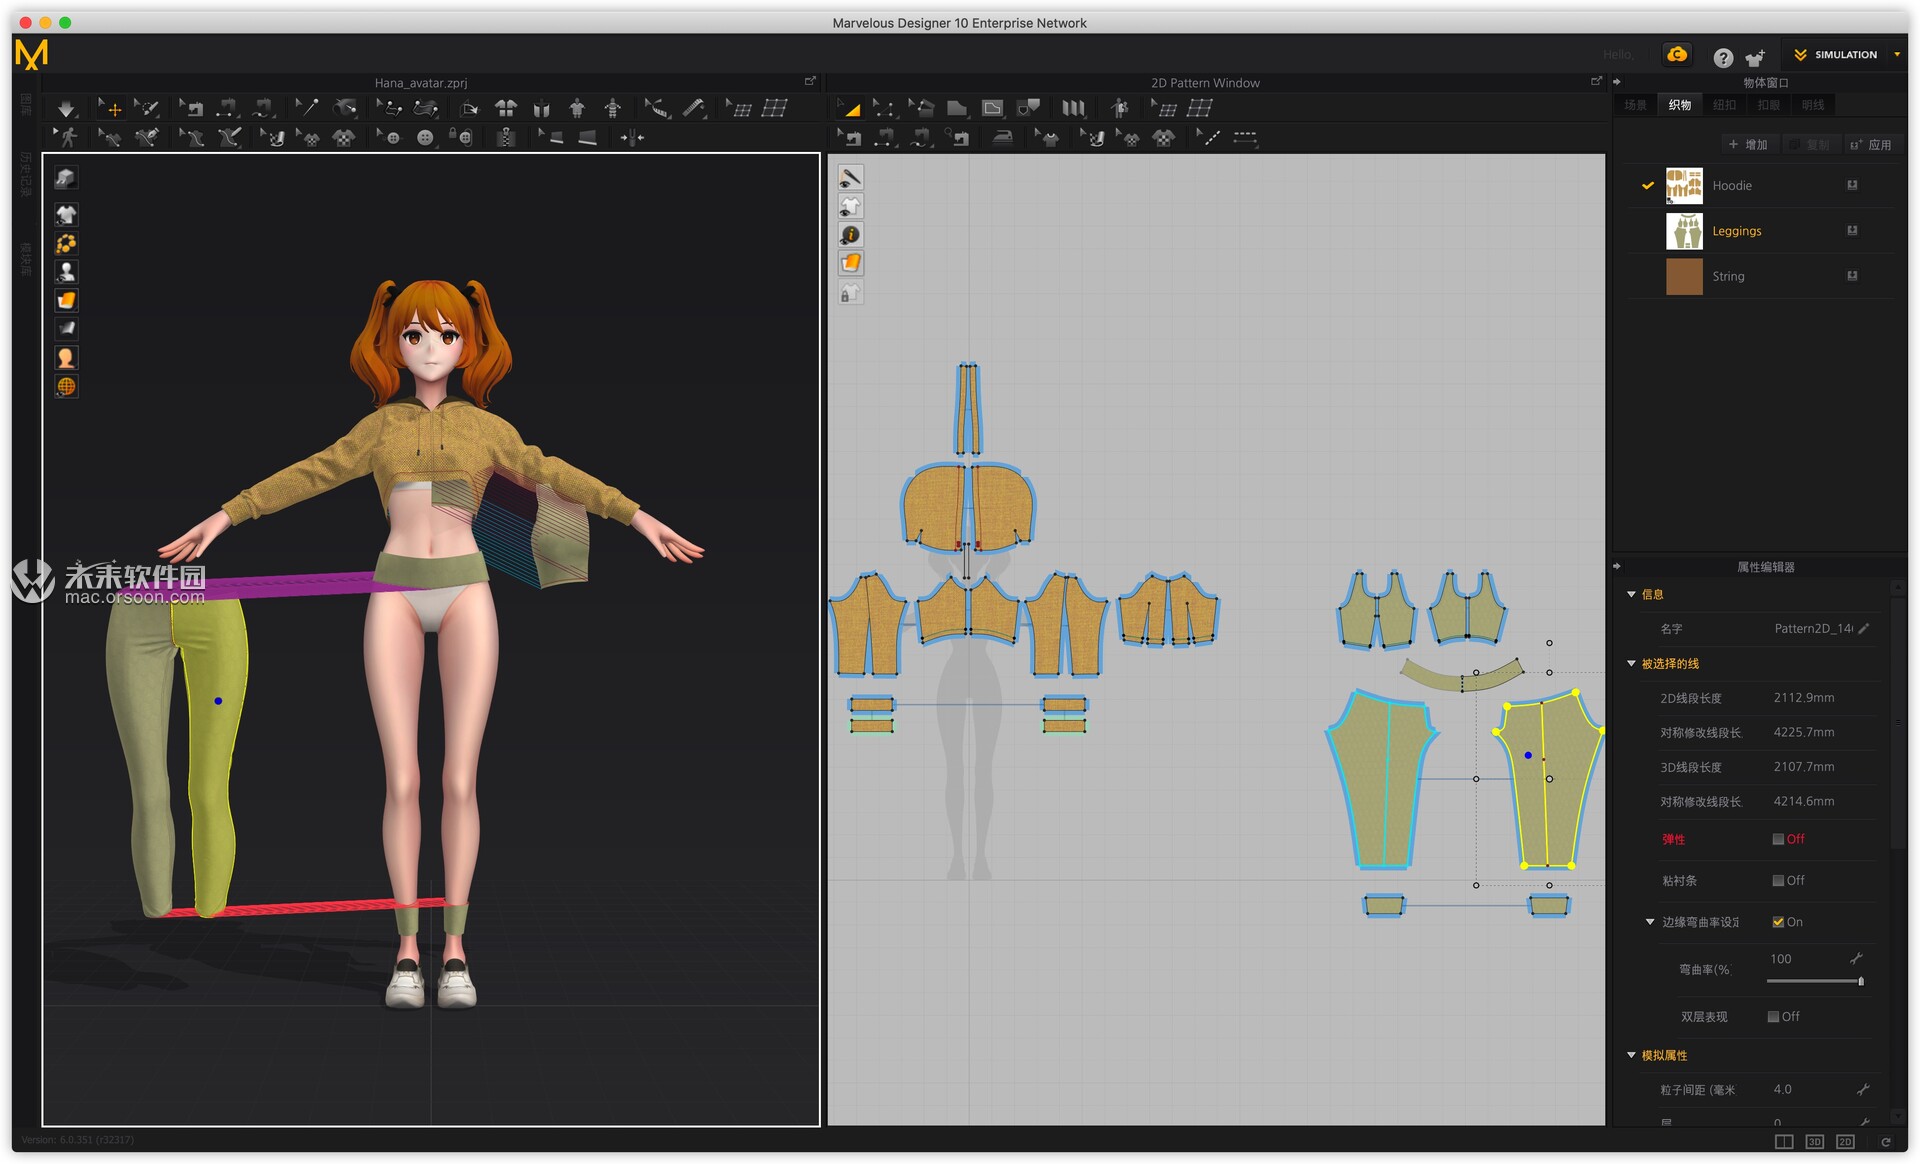 服装设计绘图软件（3D服装设计软件：Marvelous Designer 10 mac中文版）